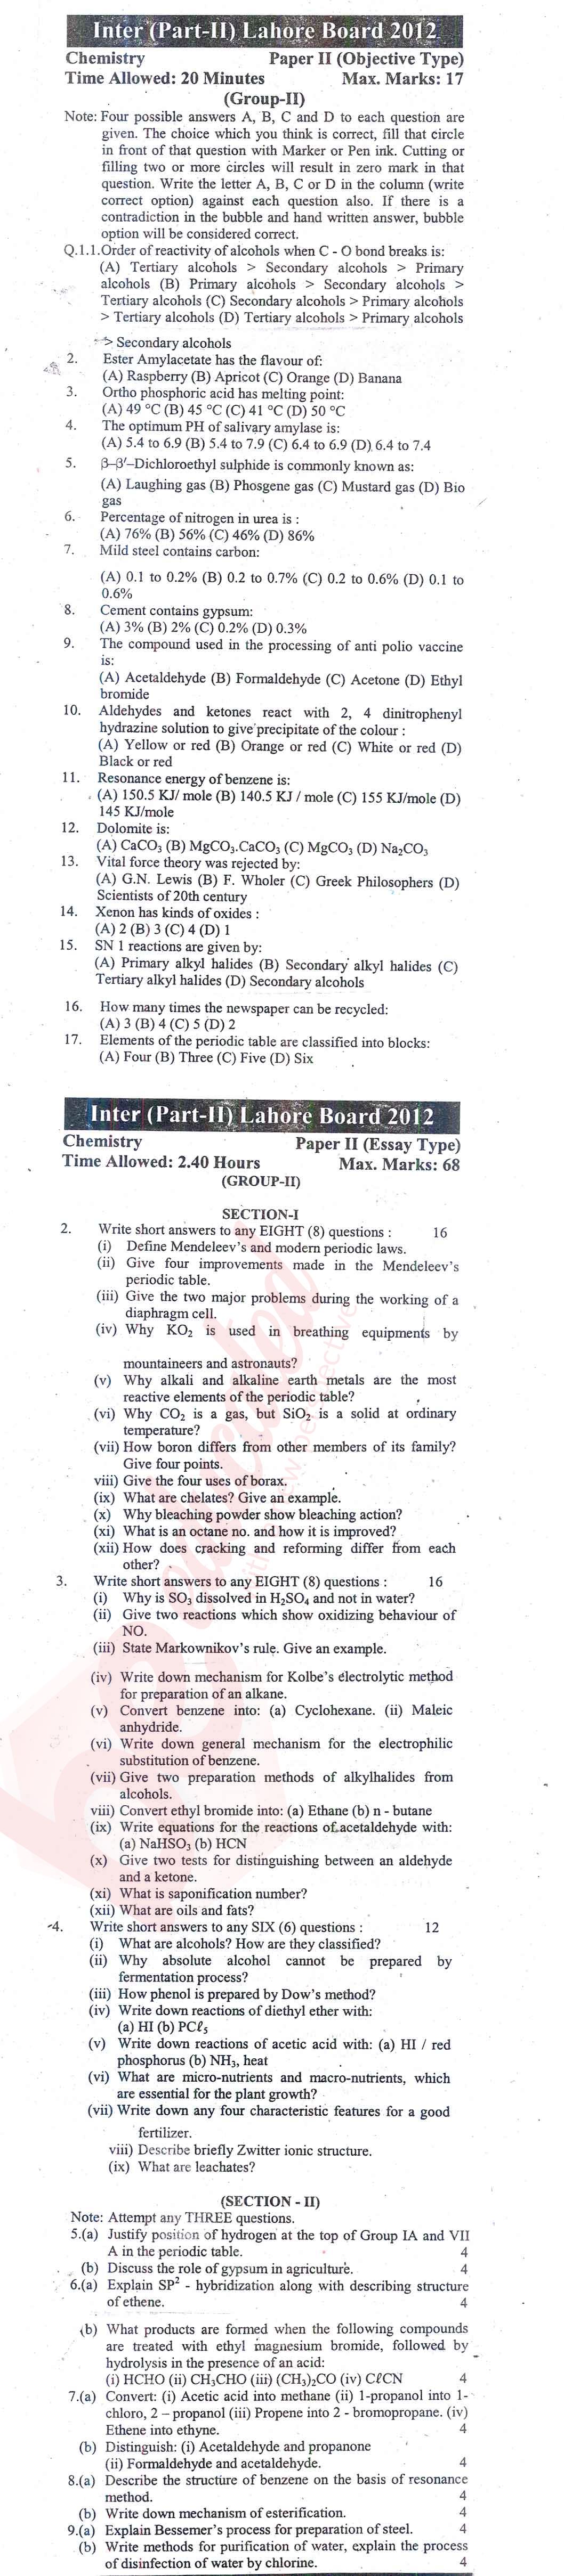 Chemistry FSC Part 2 Past Paper Group 2 BISE Lahore 2012